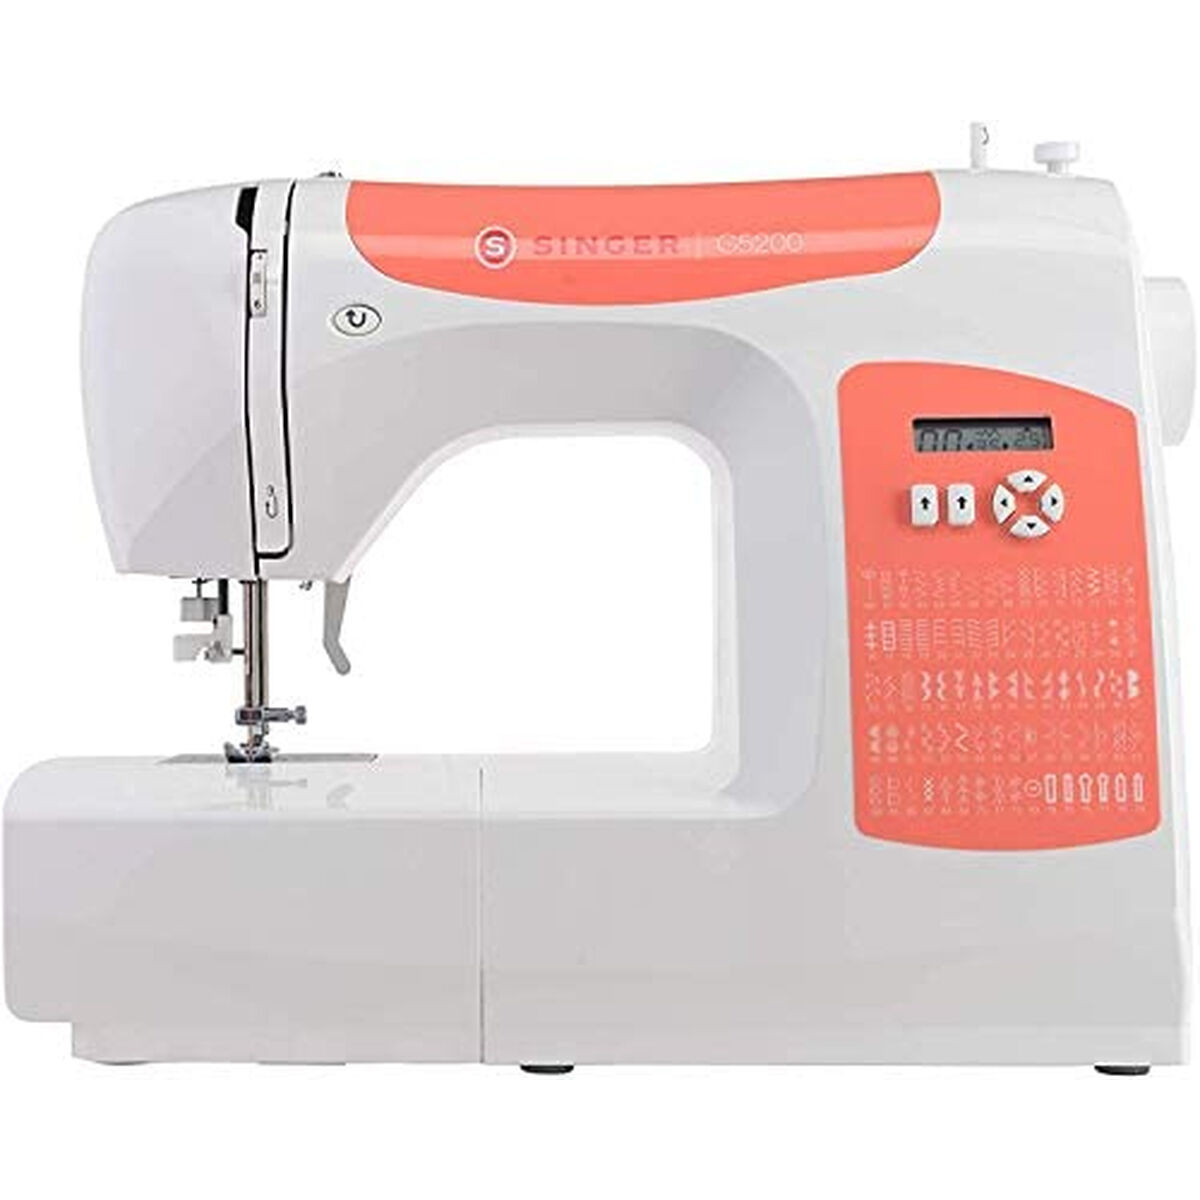 Sewing Machine Singer C5205